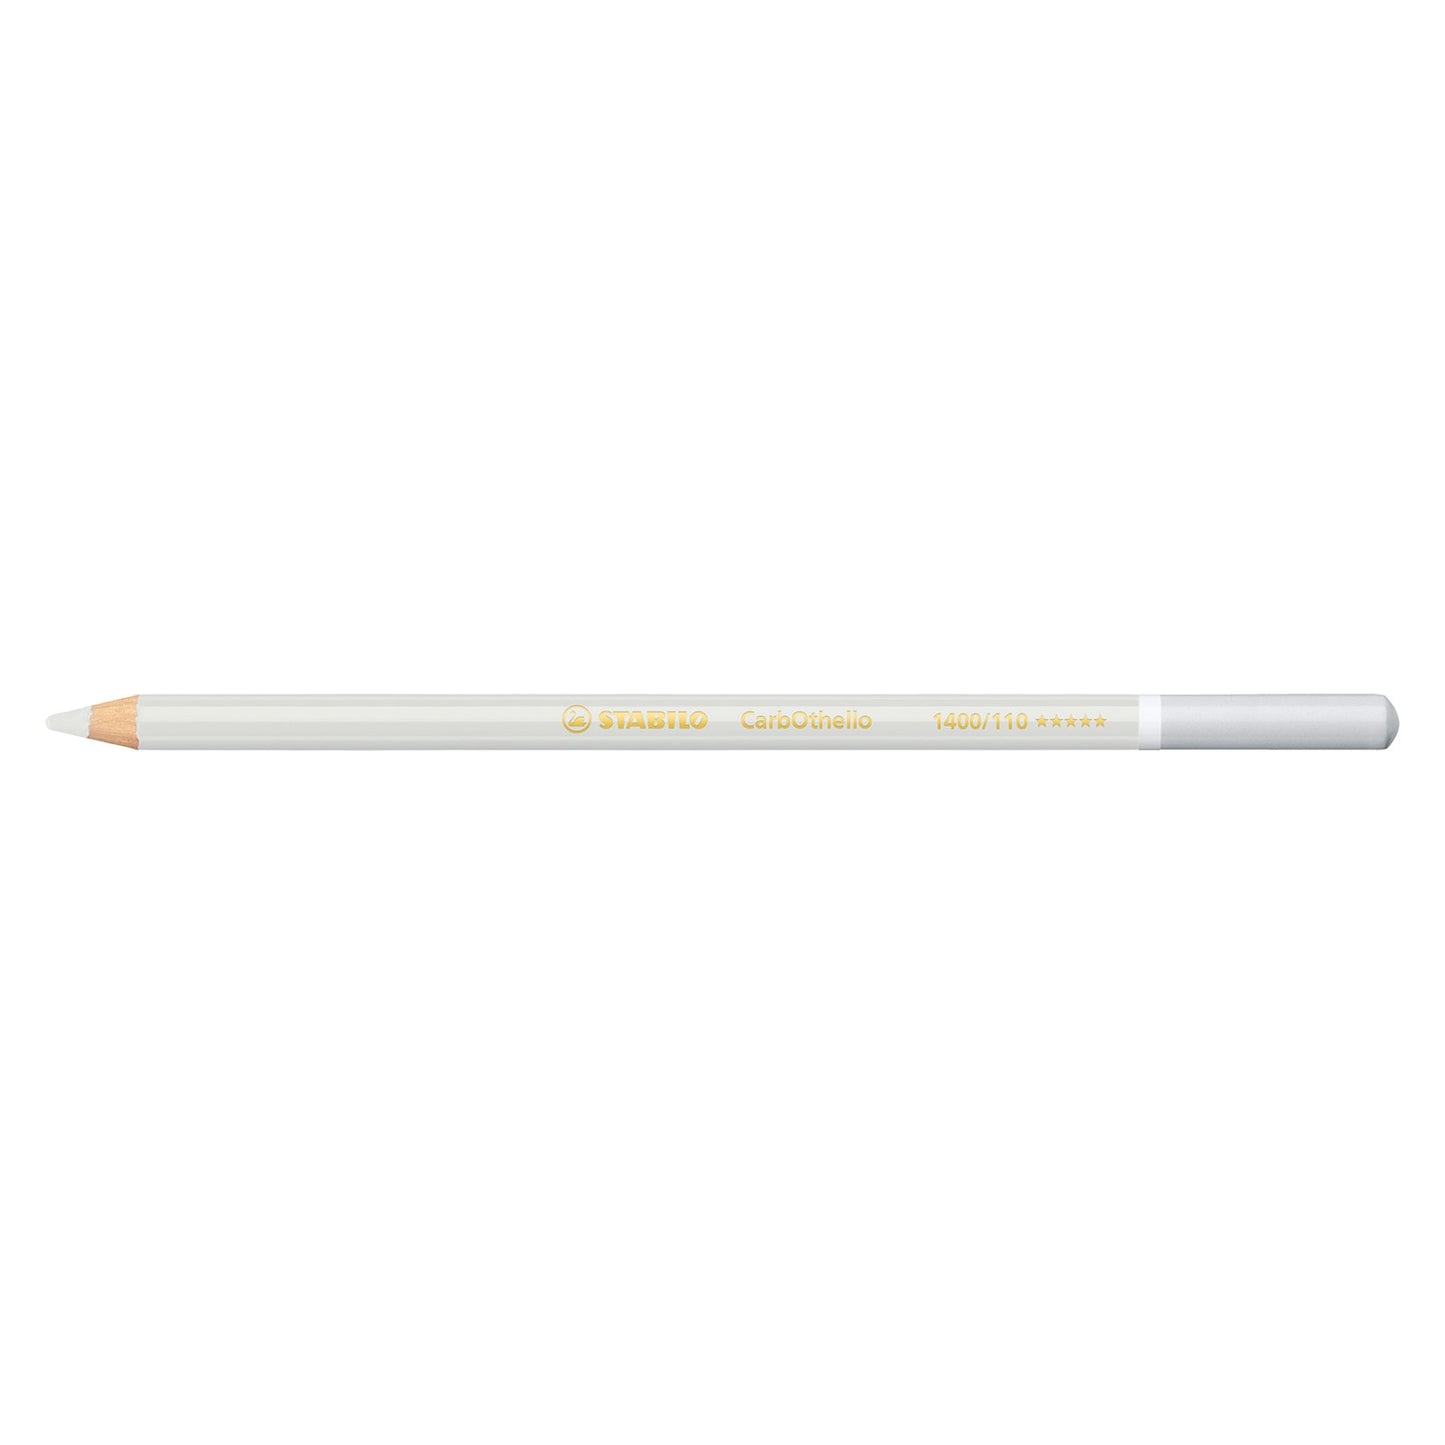 Stabilo Carbothello Pastel Pencil, Gray White 1400/110